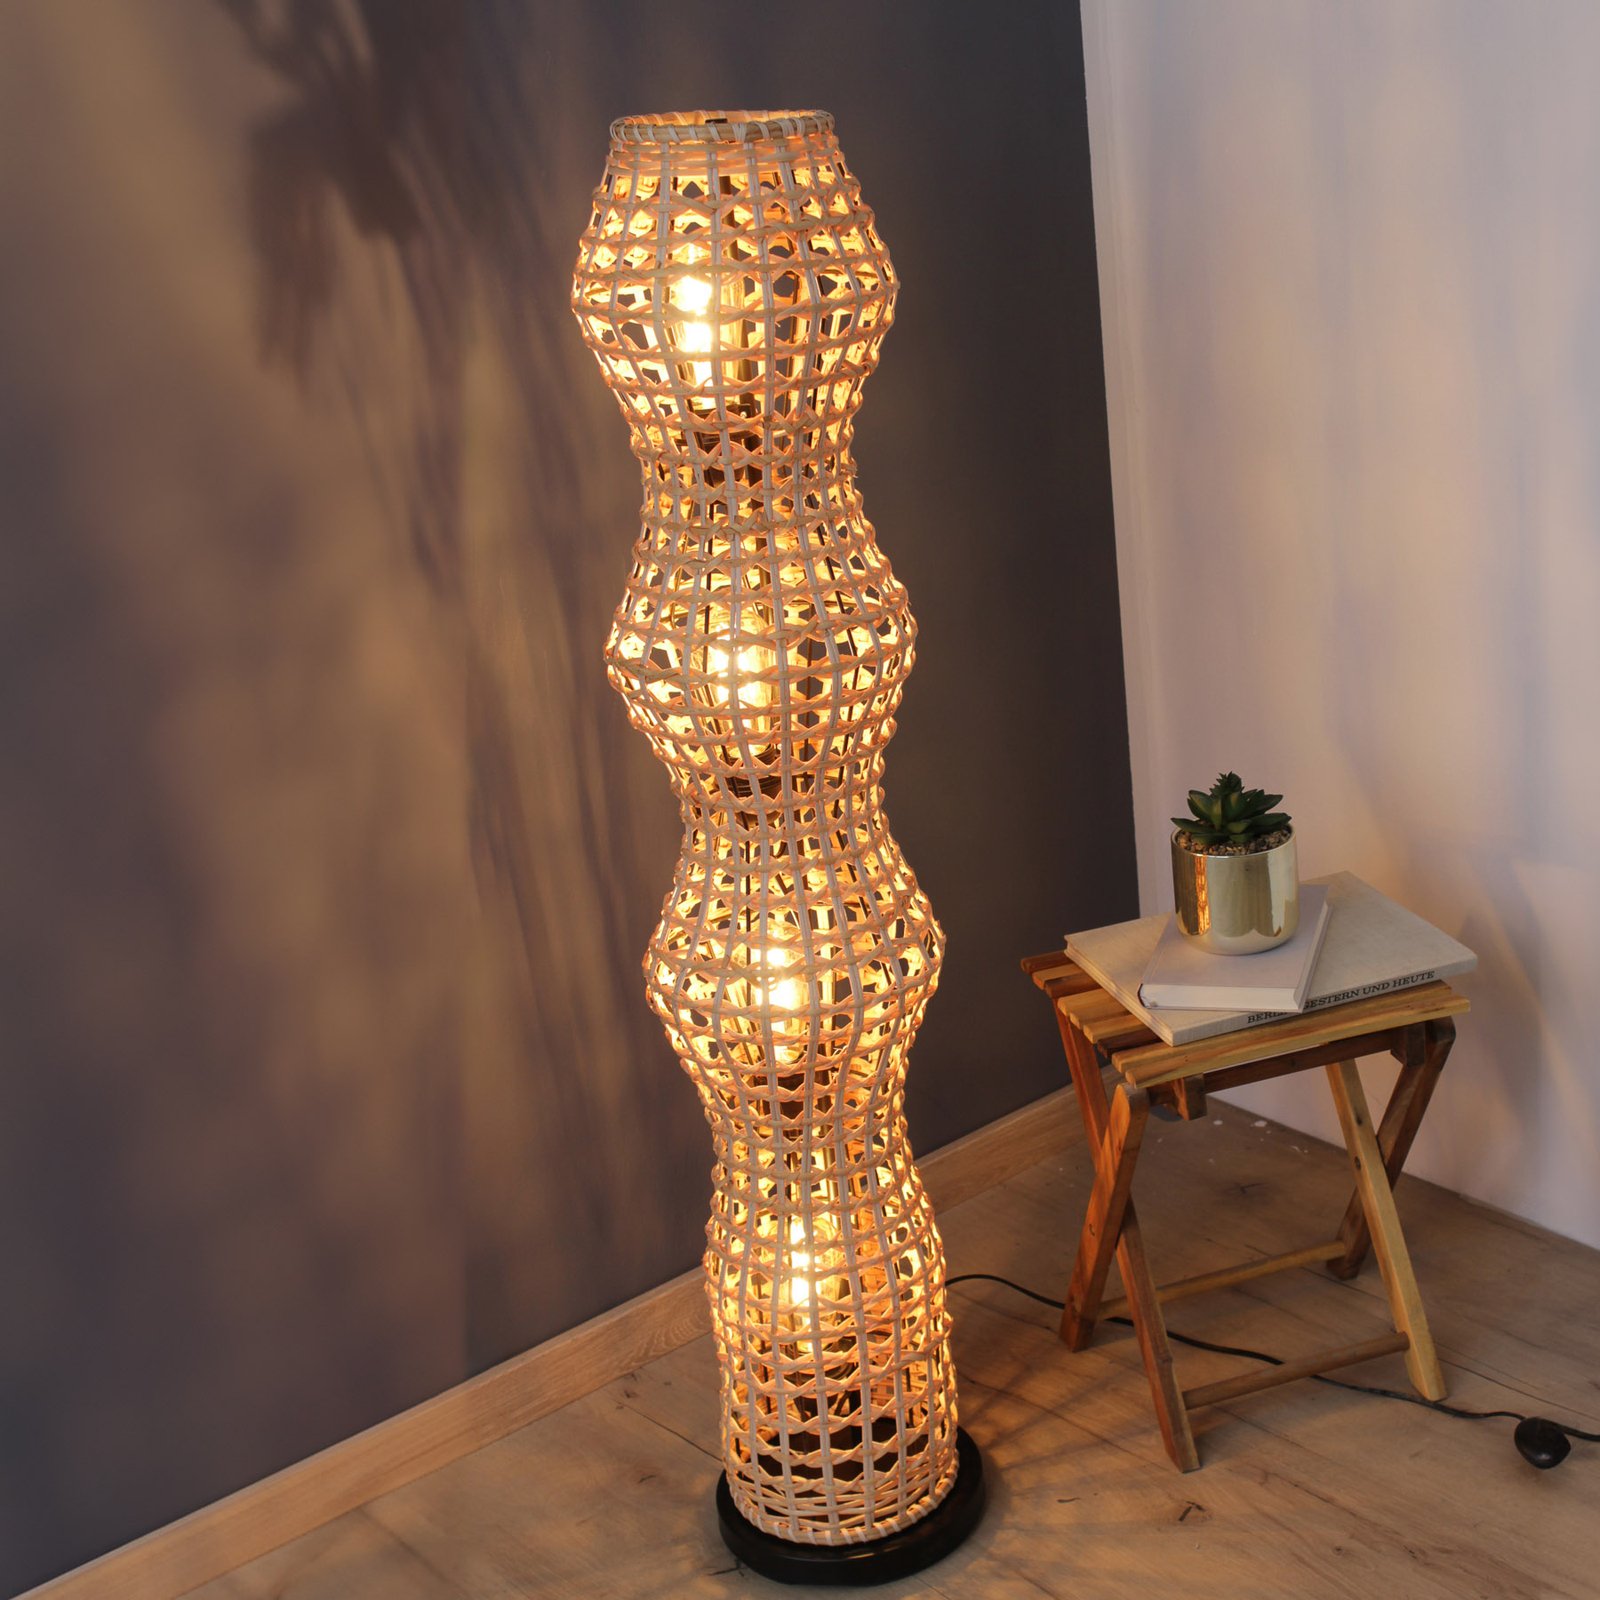 Capella floor lamp, height 110 cm